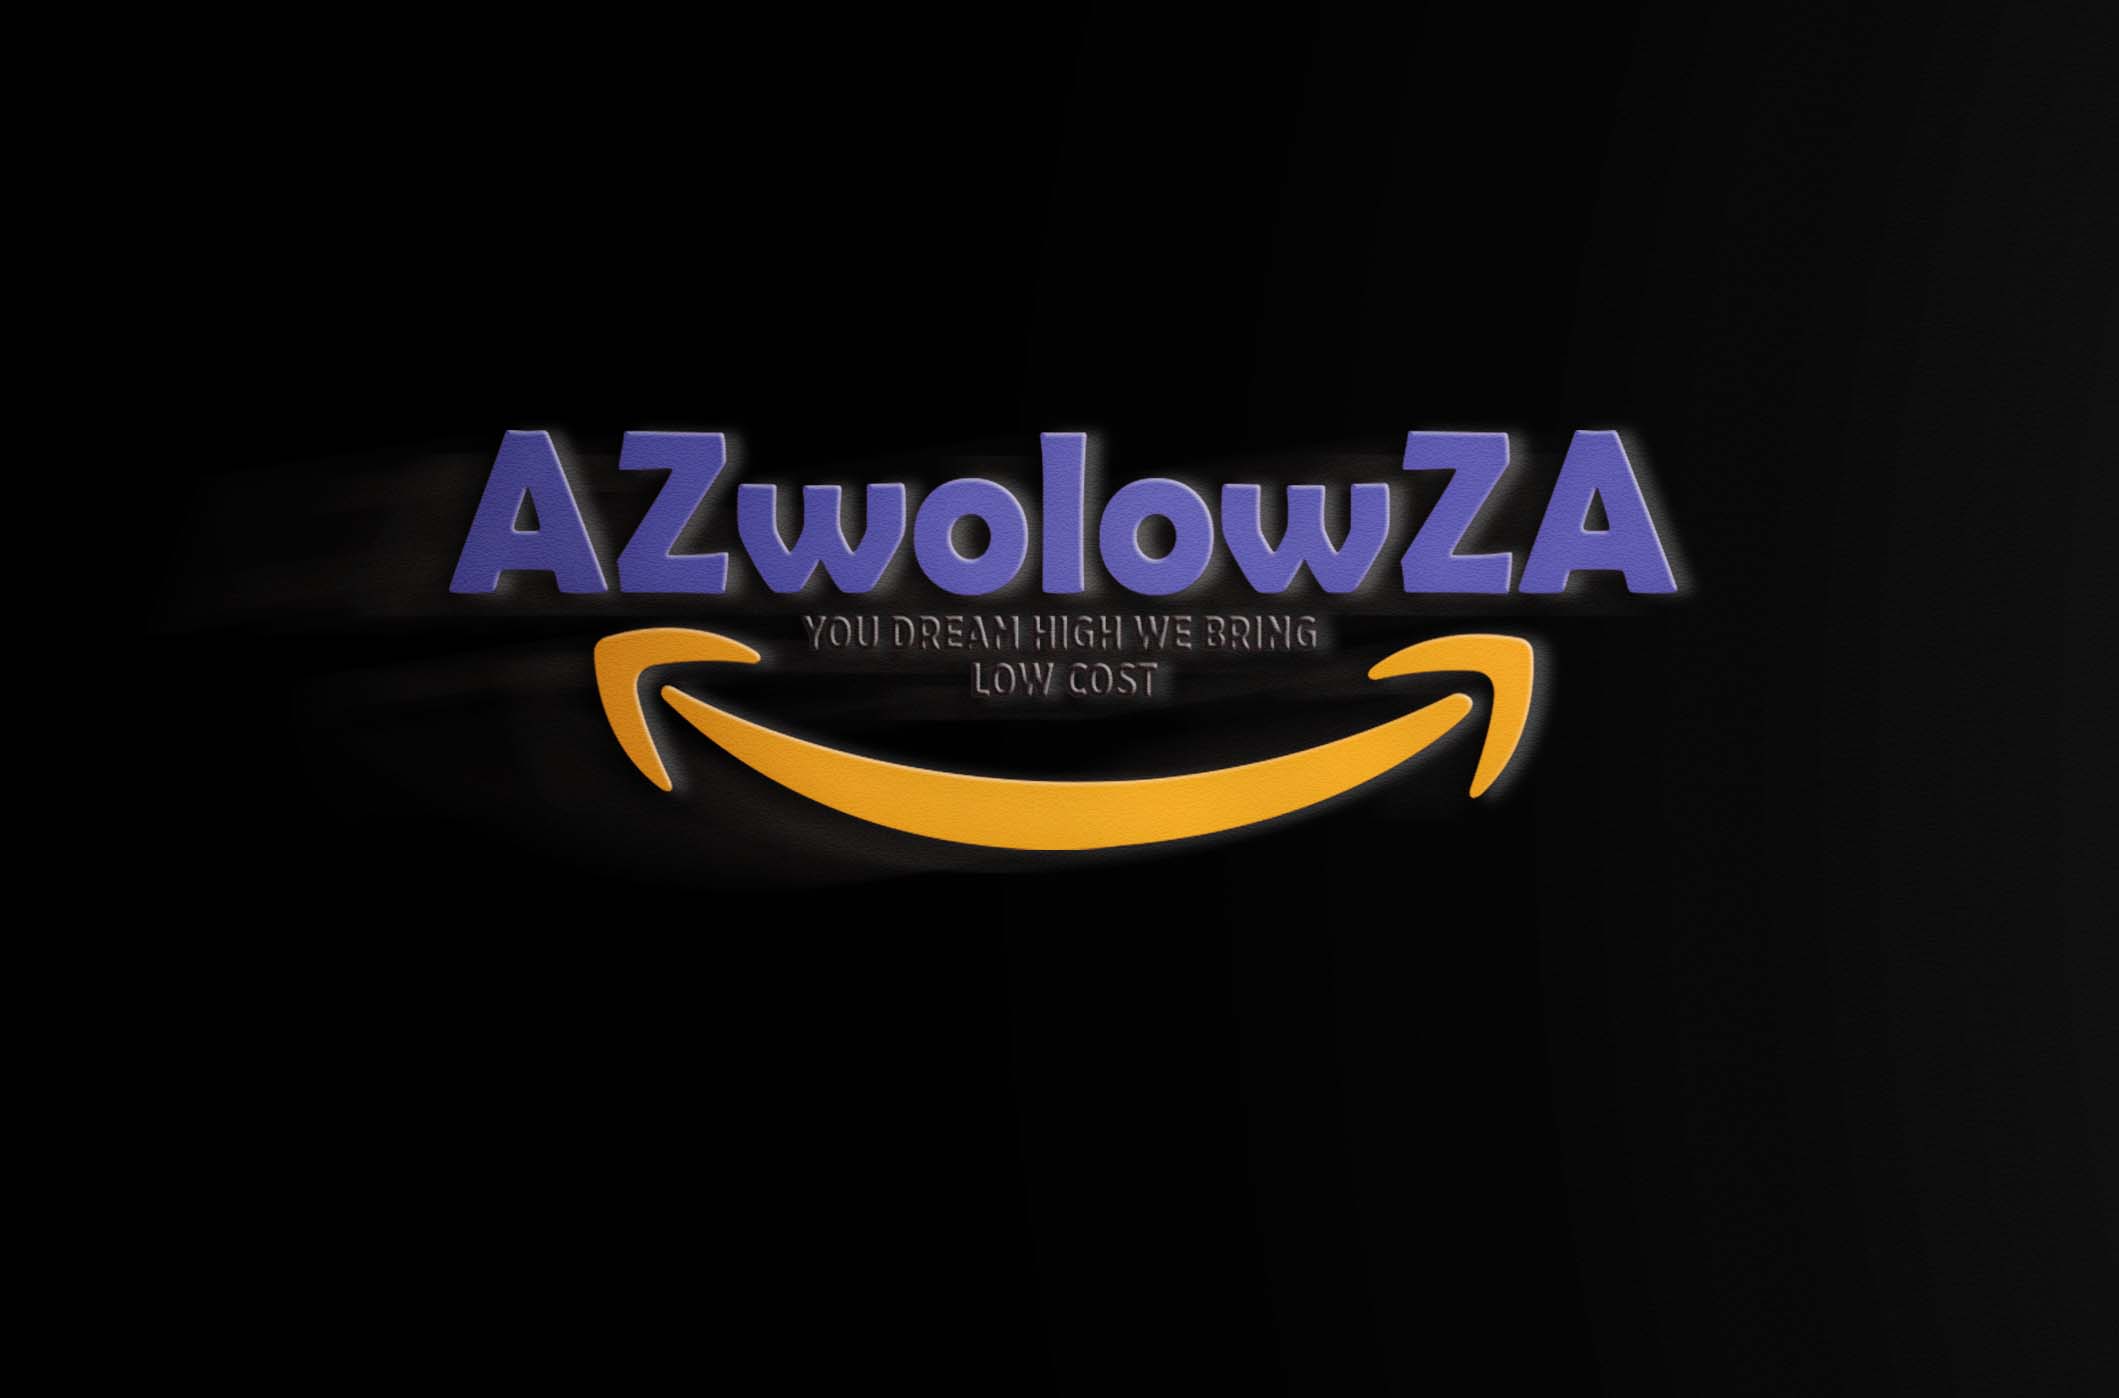 Azwolowza